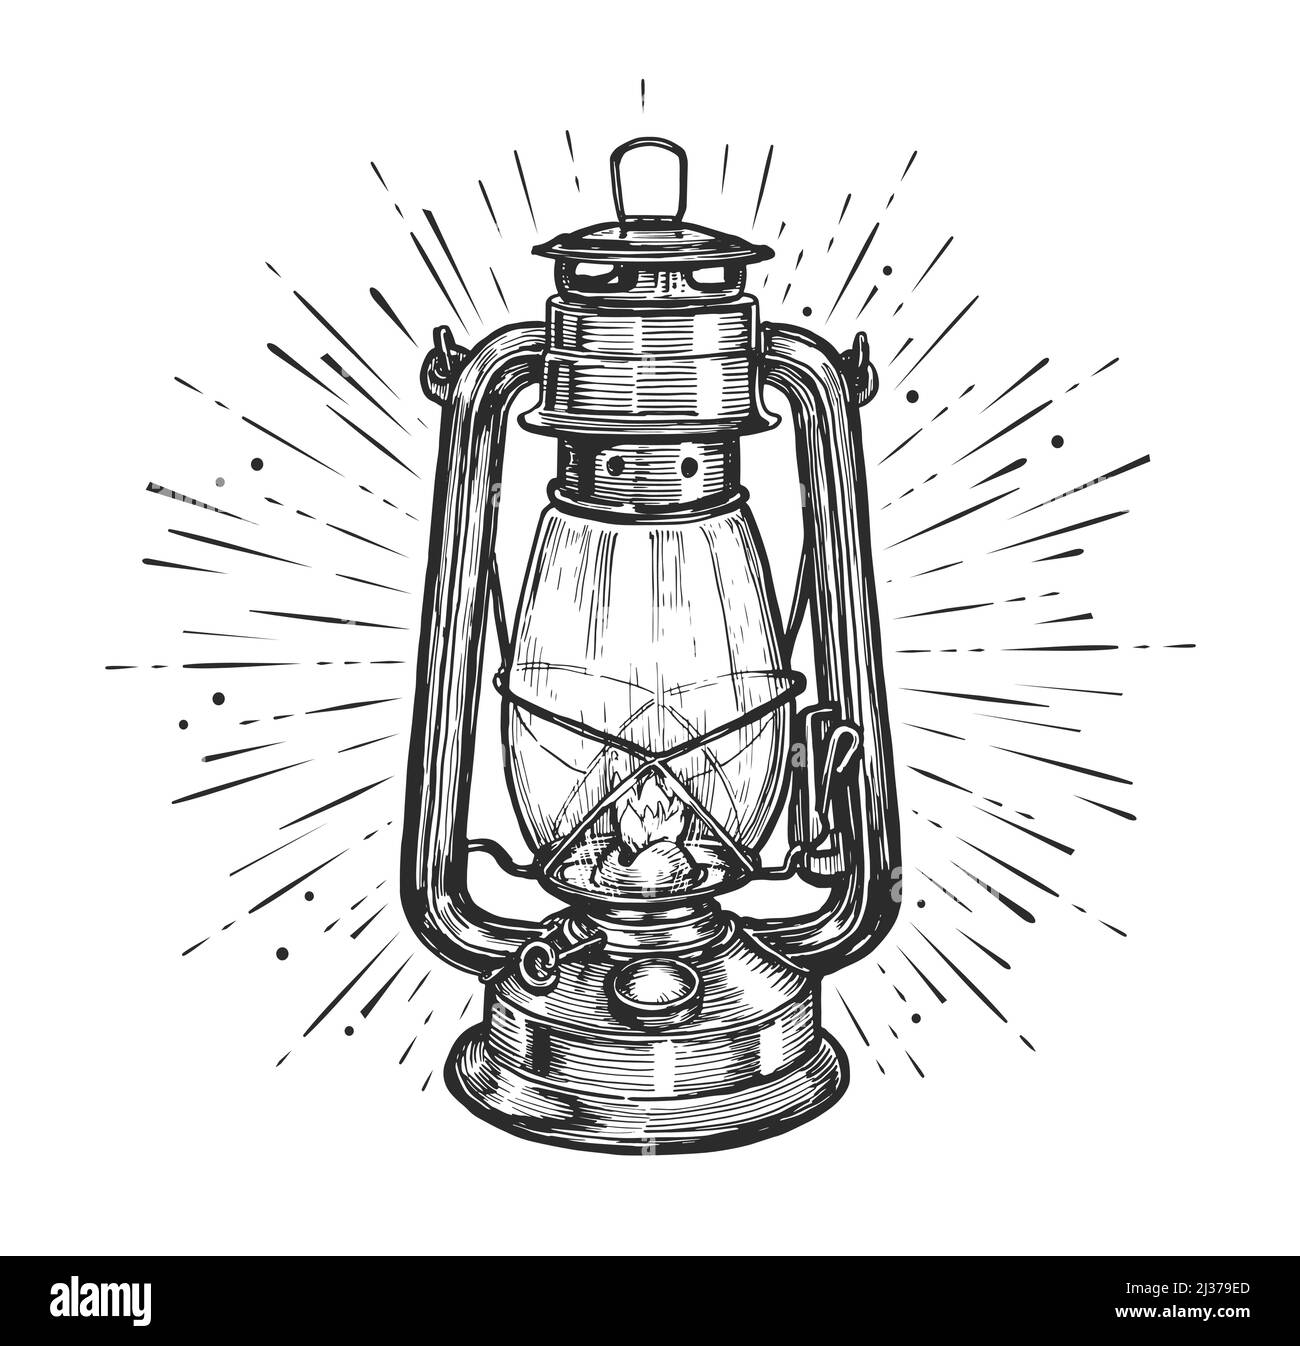 Lanterna glowing vintage disegno a mano stile incisione. Illustrazione  vettoriale dello schizzo della lampada a cherosene Immagine e Vettoriale -  Alamy